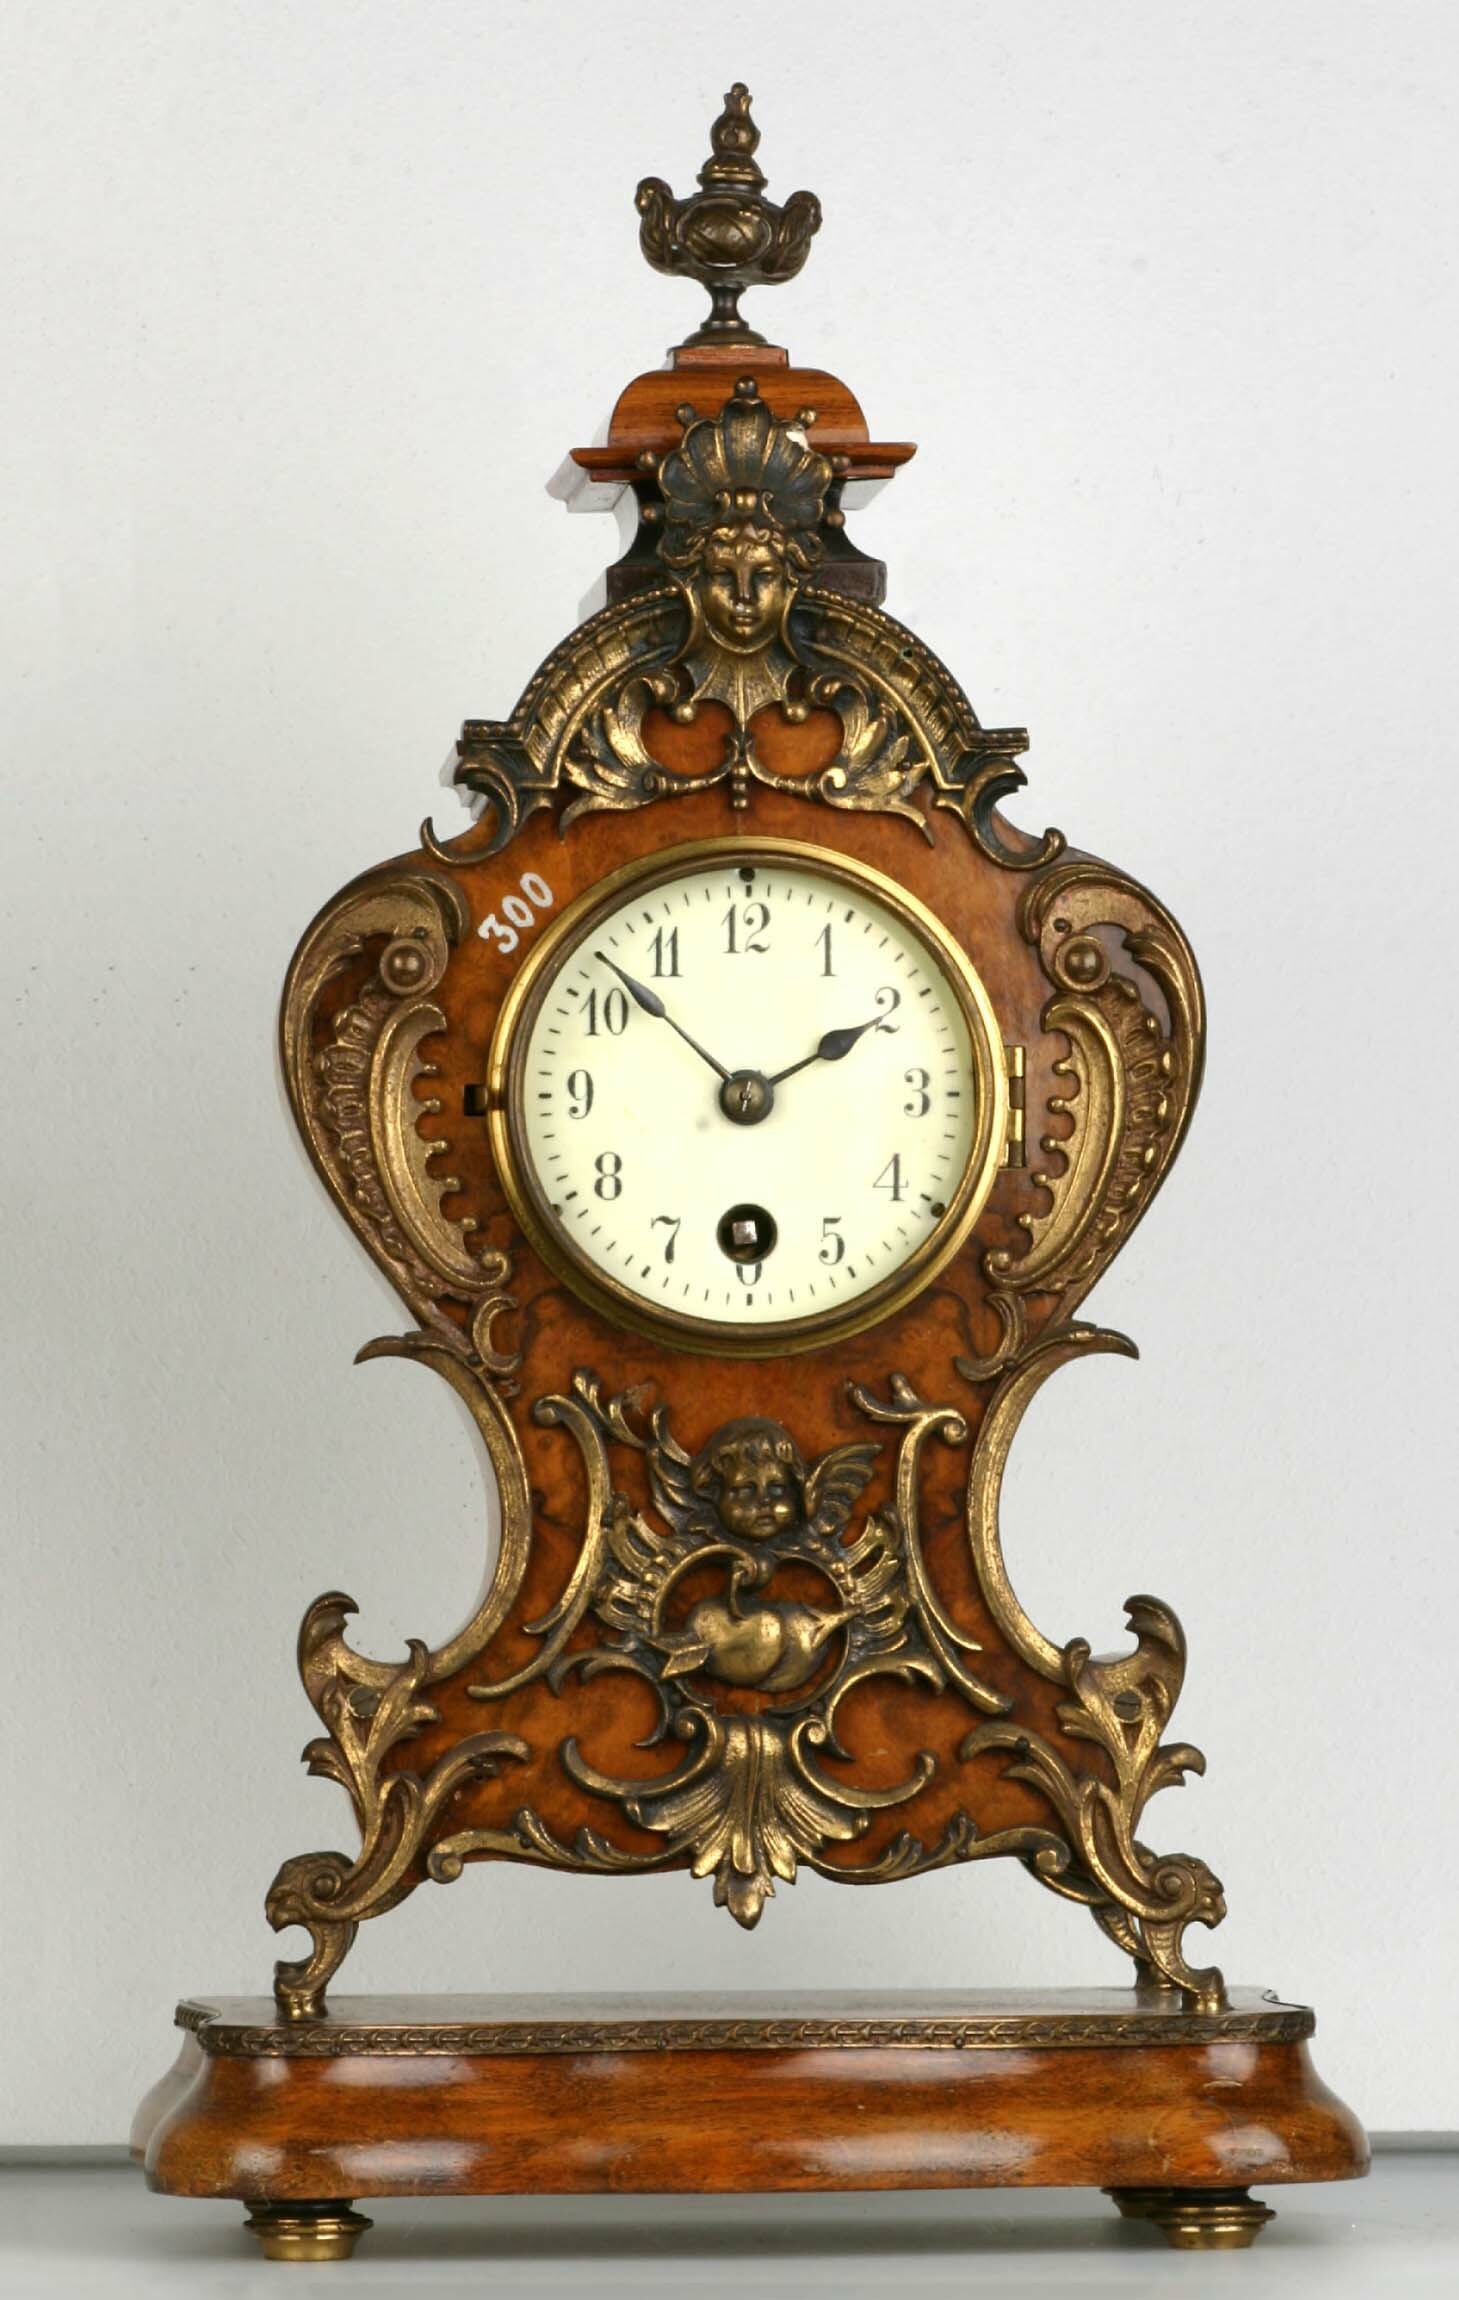 Tischuhr, A. G. für Uhrenfabrikation, Lenzkirch, 1894 (Deutsches Uhrenmuseum CC BY-SA)